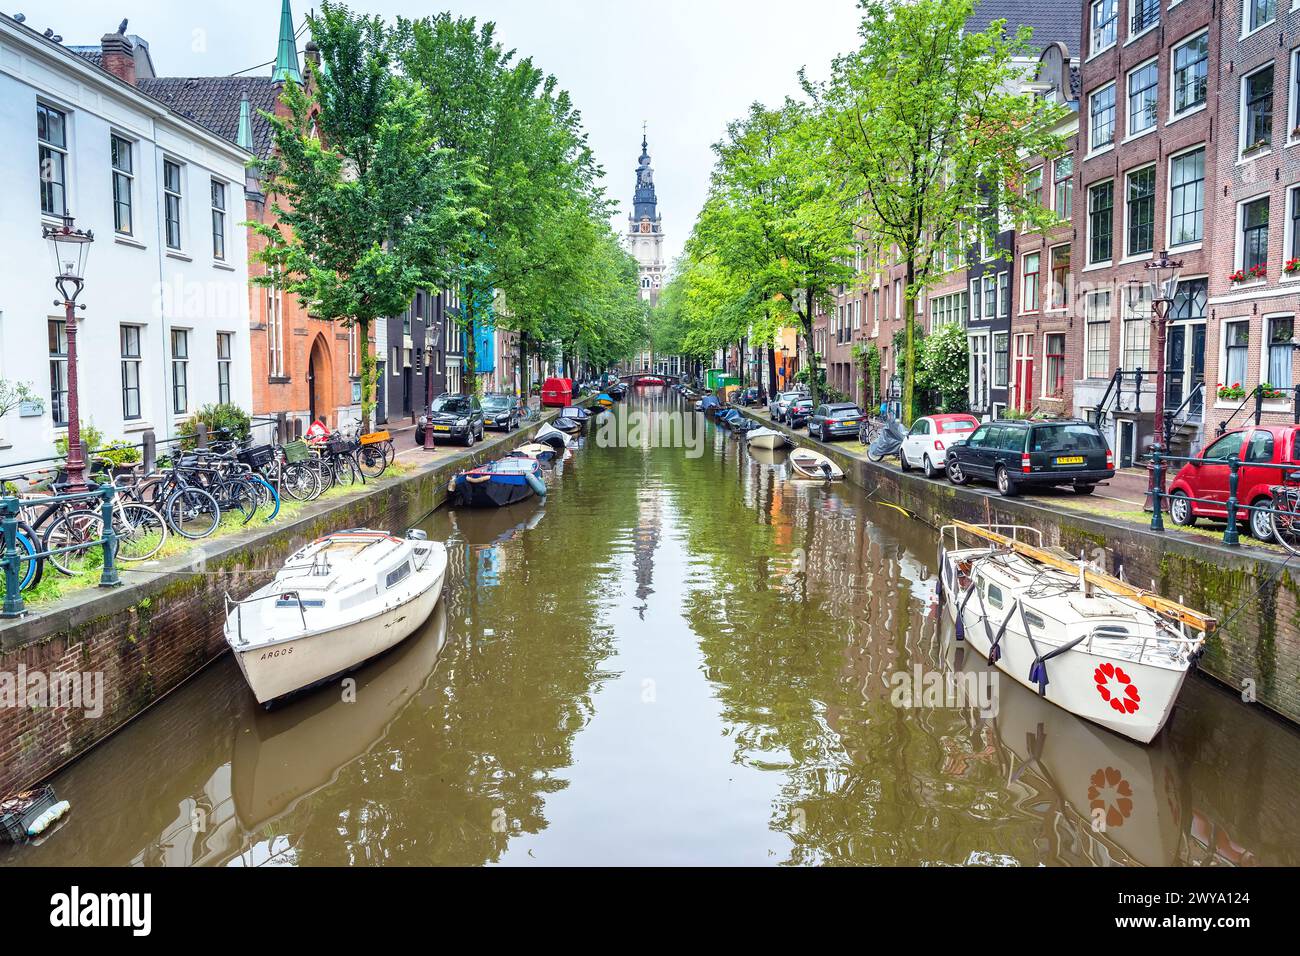 Amsterdam, pays-Bas - 12 juin 2019 : vue d'une journée depuis le pont Staalmeestersbrug avec des maisons hollandaises typiques, le canal et les magasins à Amsterdam, pays-Bas Banque D'Images